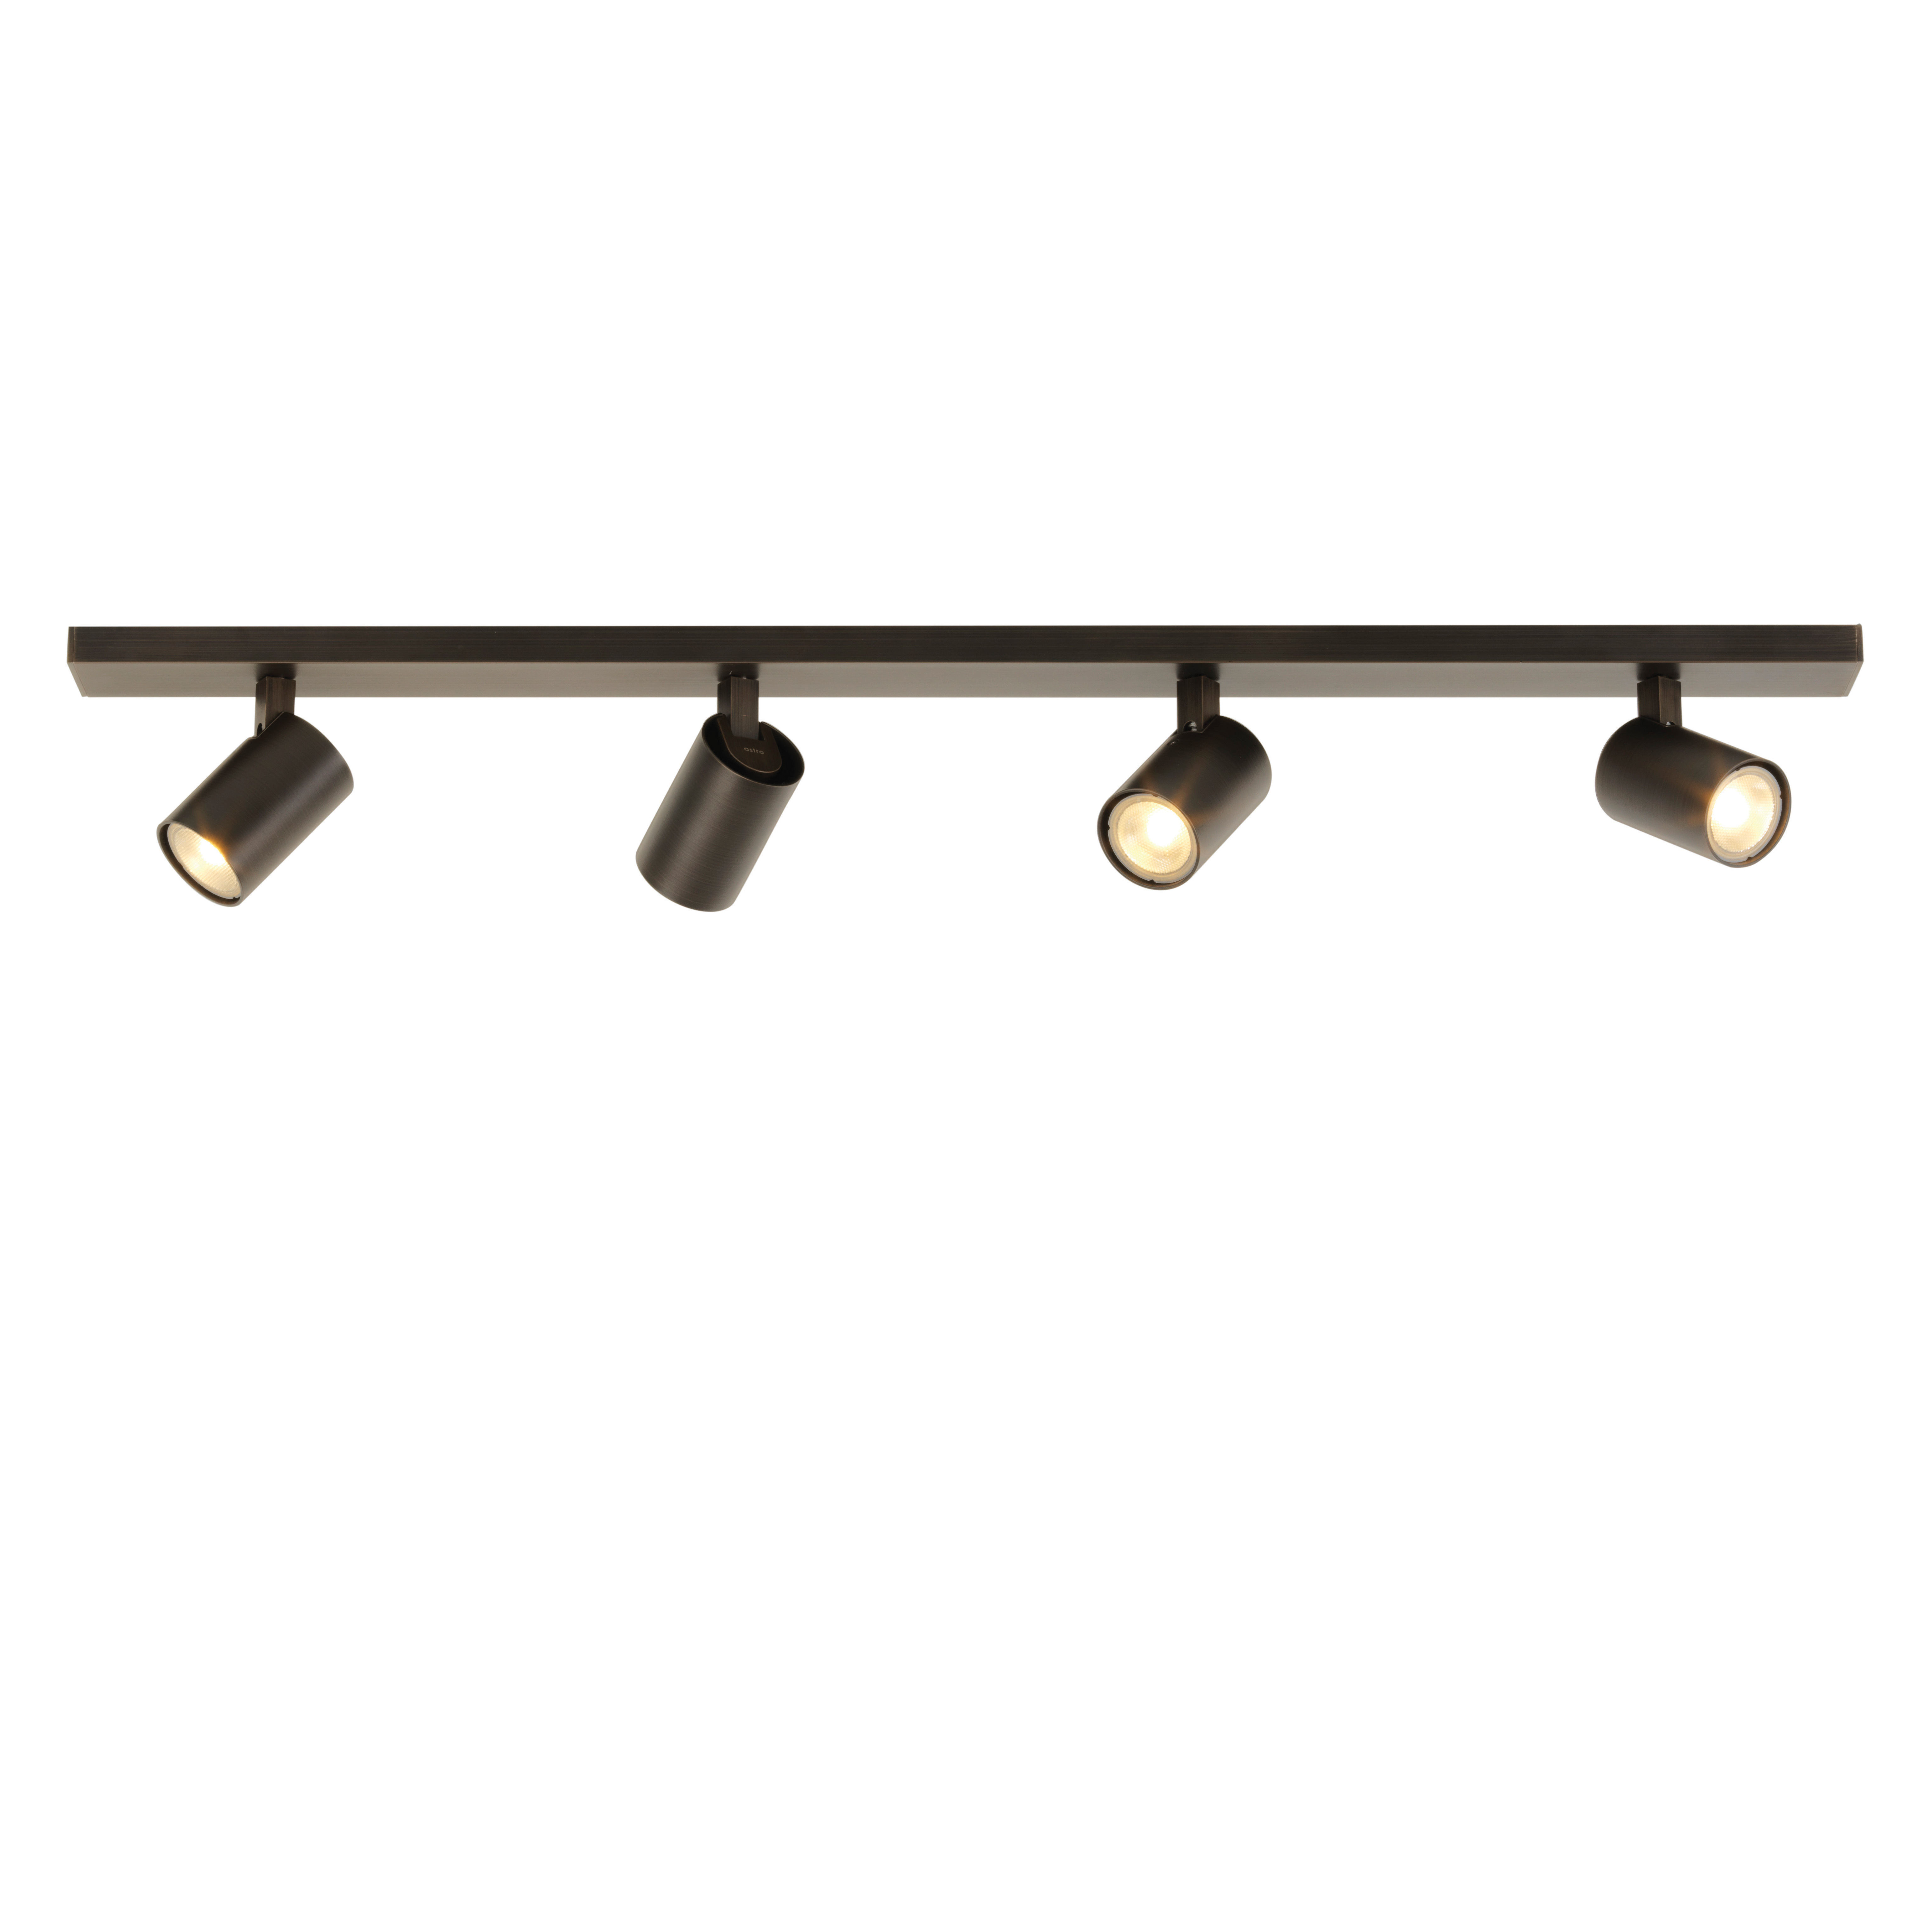 | Four Astro verstellbarer Deckenleuchte Design Lighting Bar Ascoli - von In Spot Made bronze